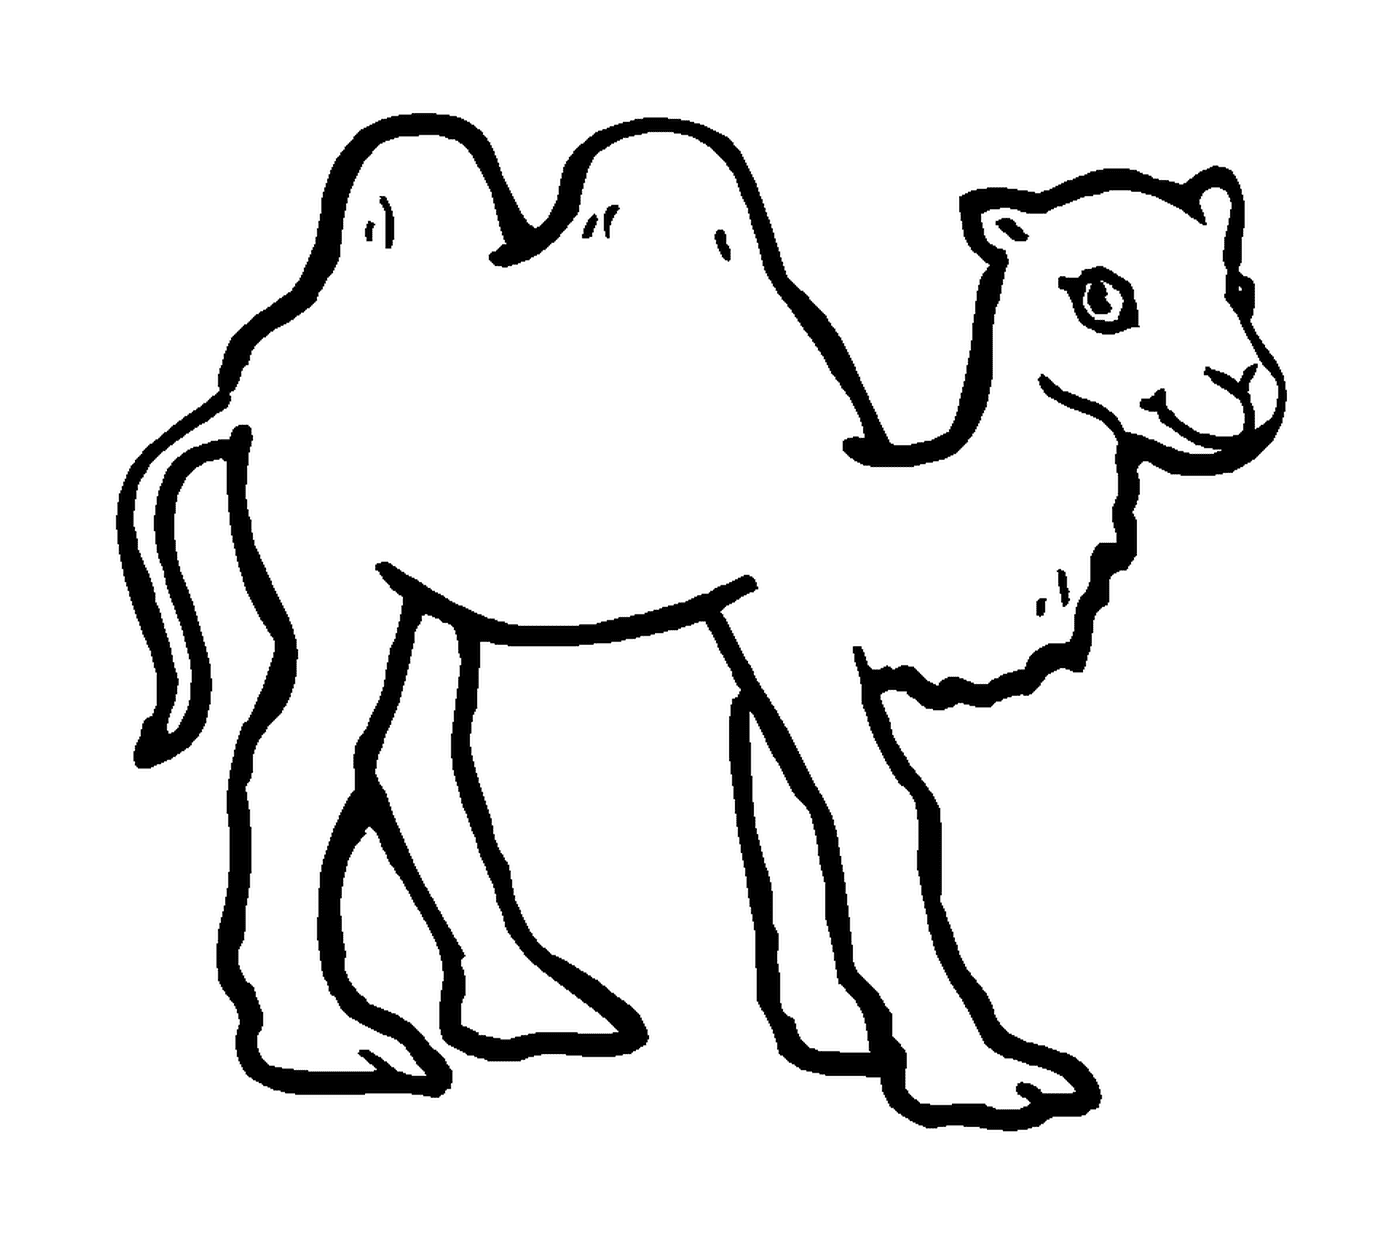  Um camelo desenhado em preto 